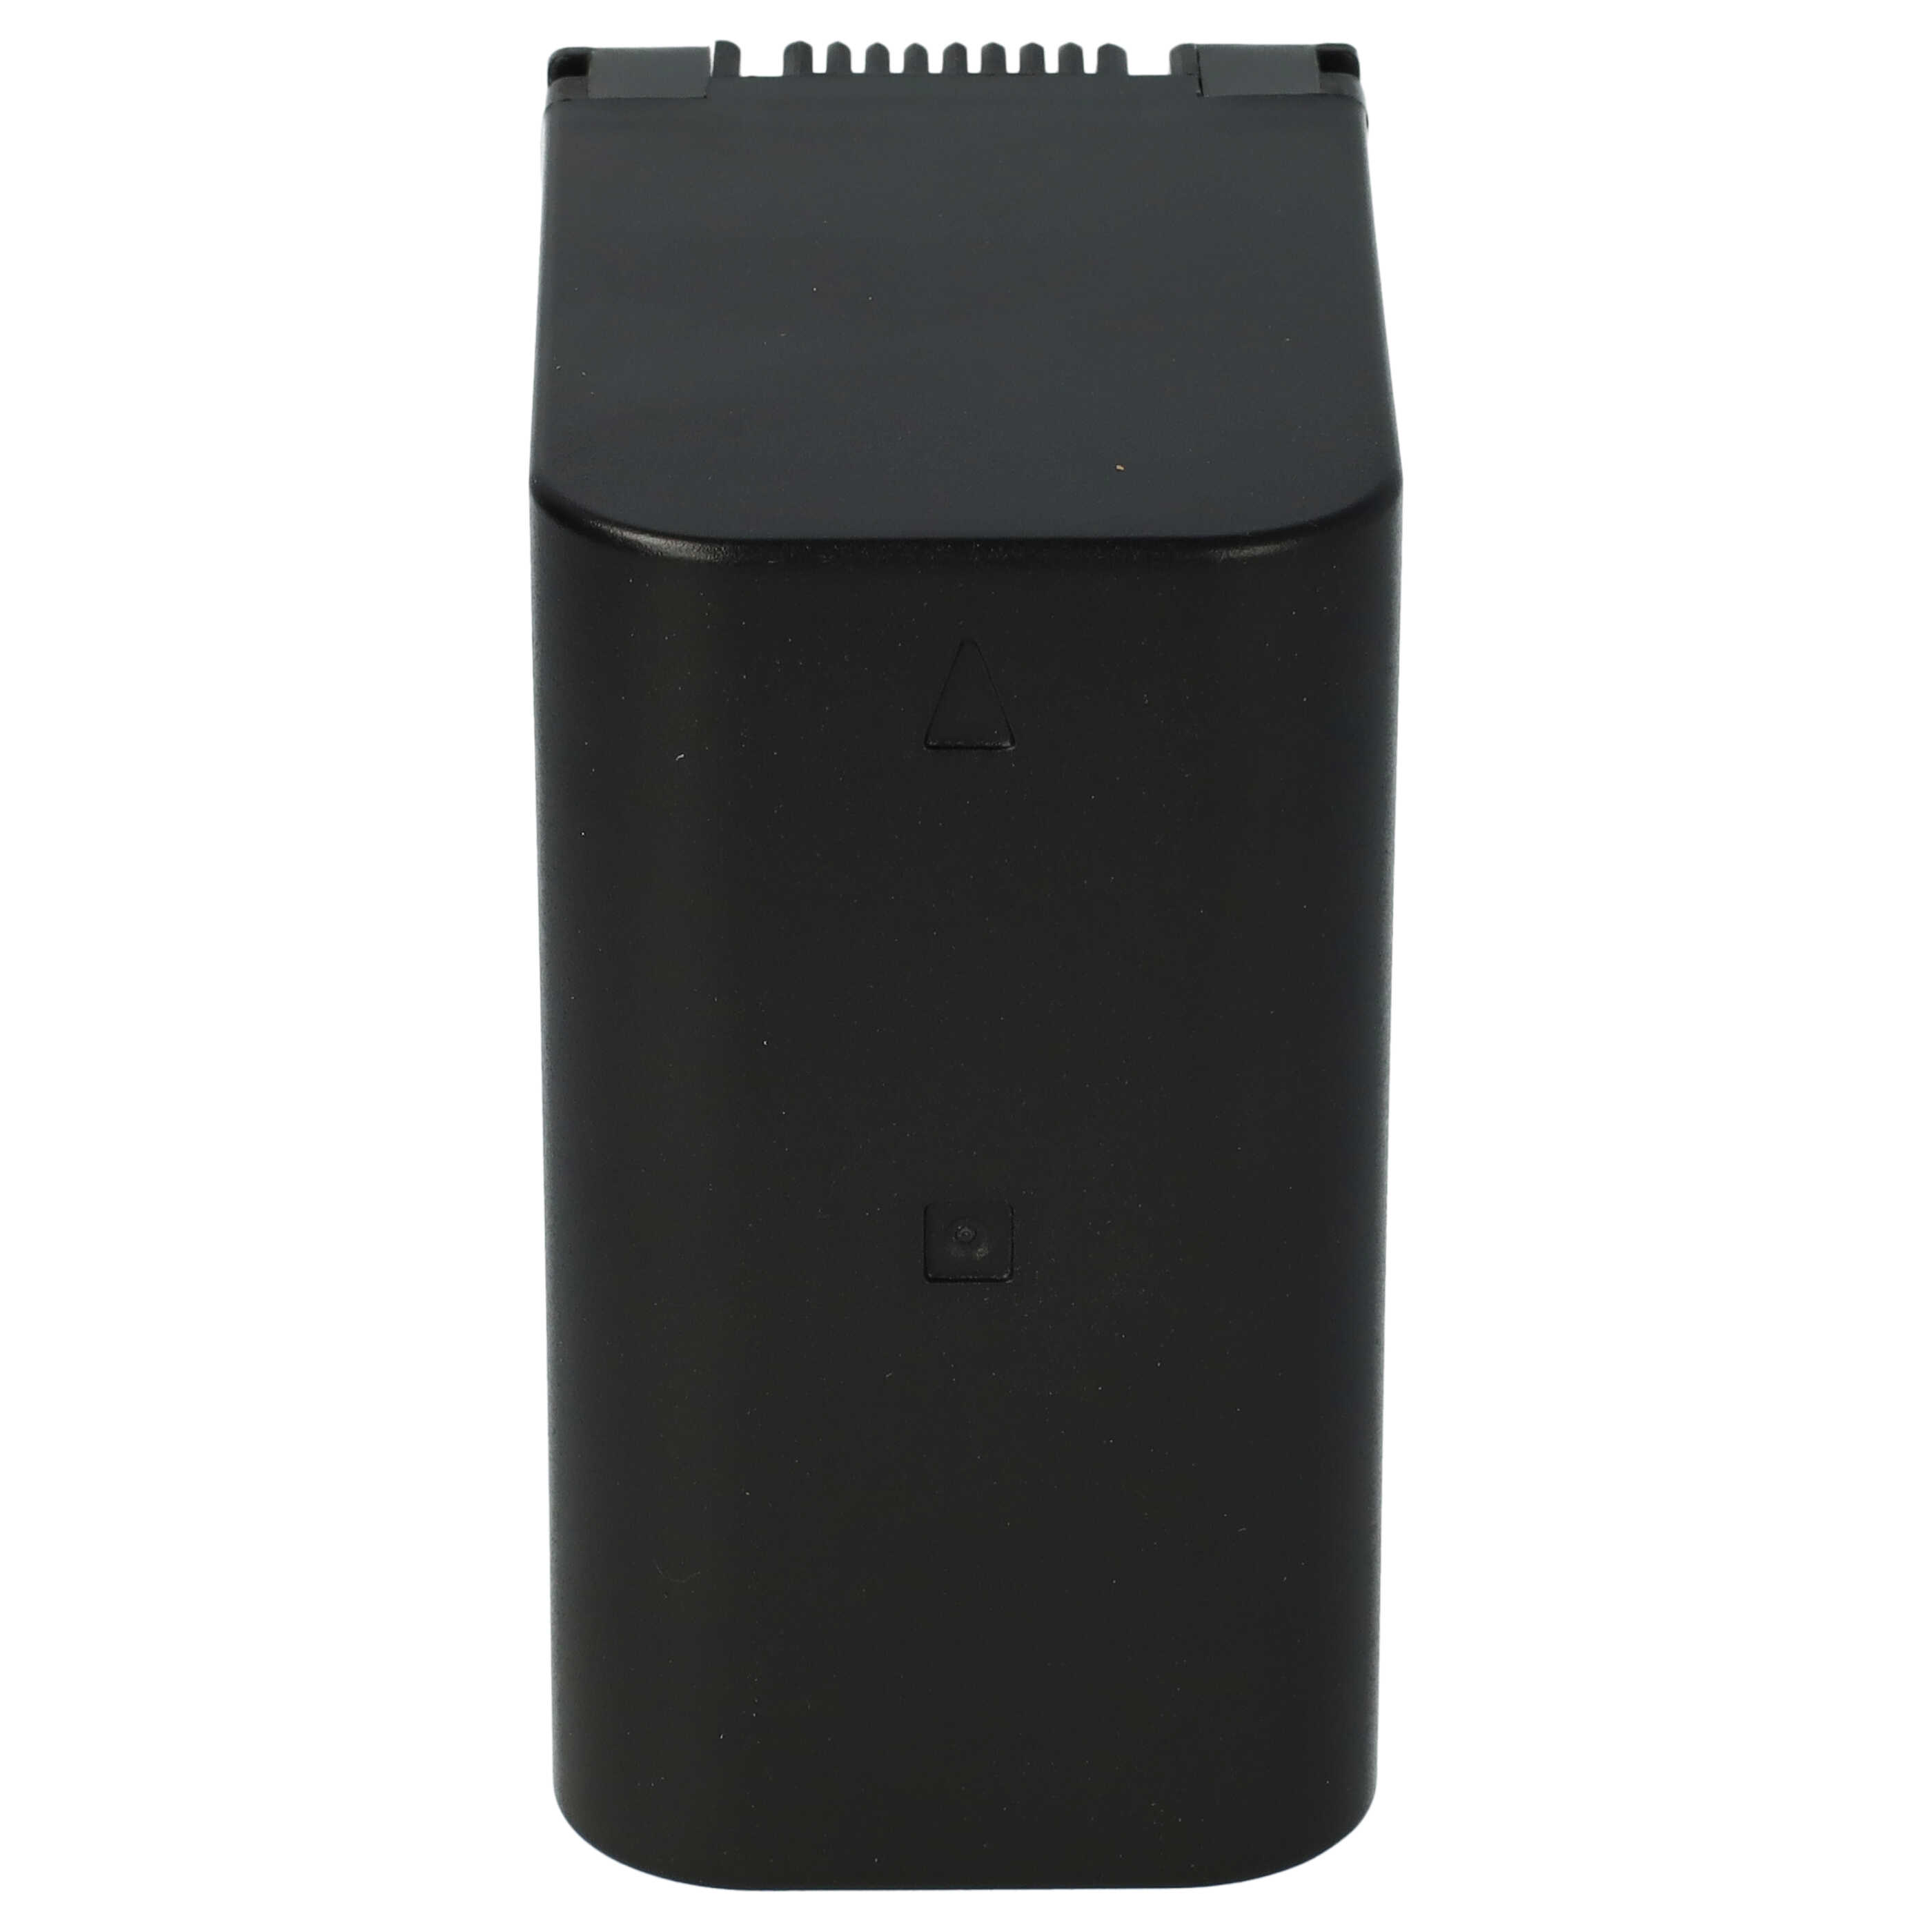 Akumulator do kamery cyfrowej / wideo zamiennik JVC BN-VC298G, BN-VC296G, BN-VC264G - 10500 mAh 7,4 V Li-Ion